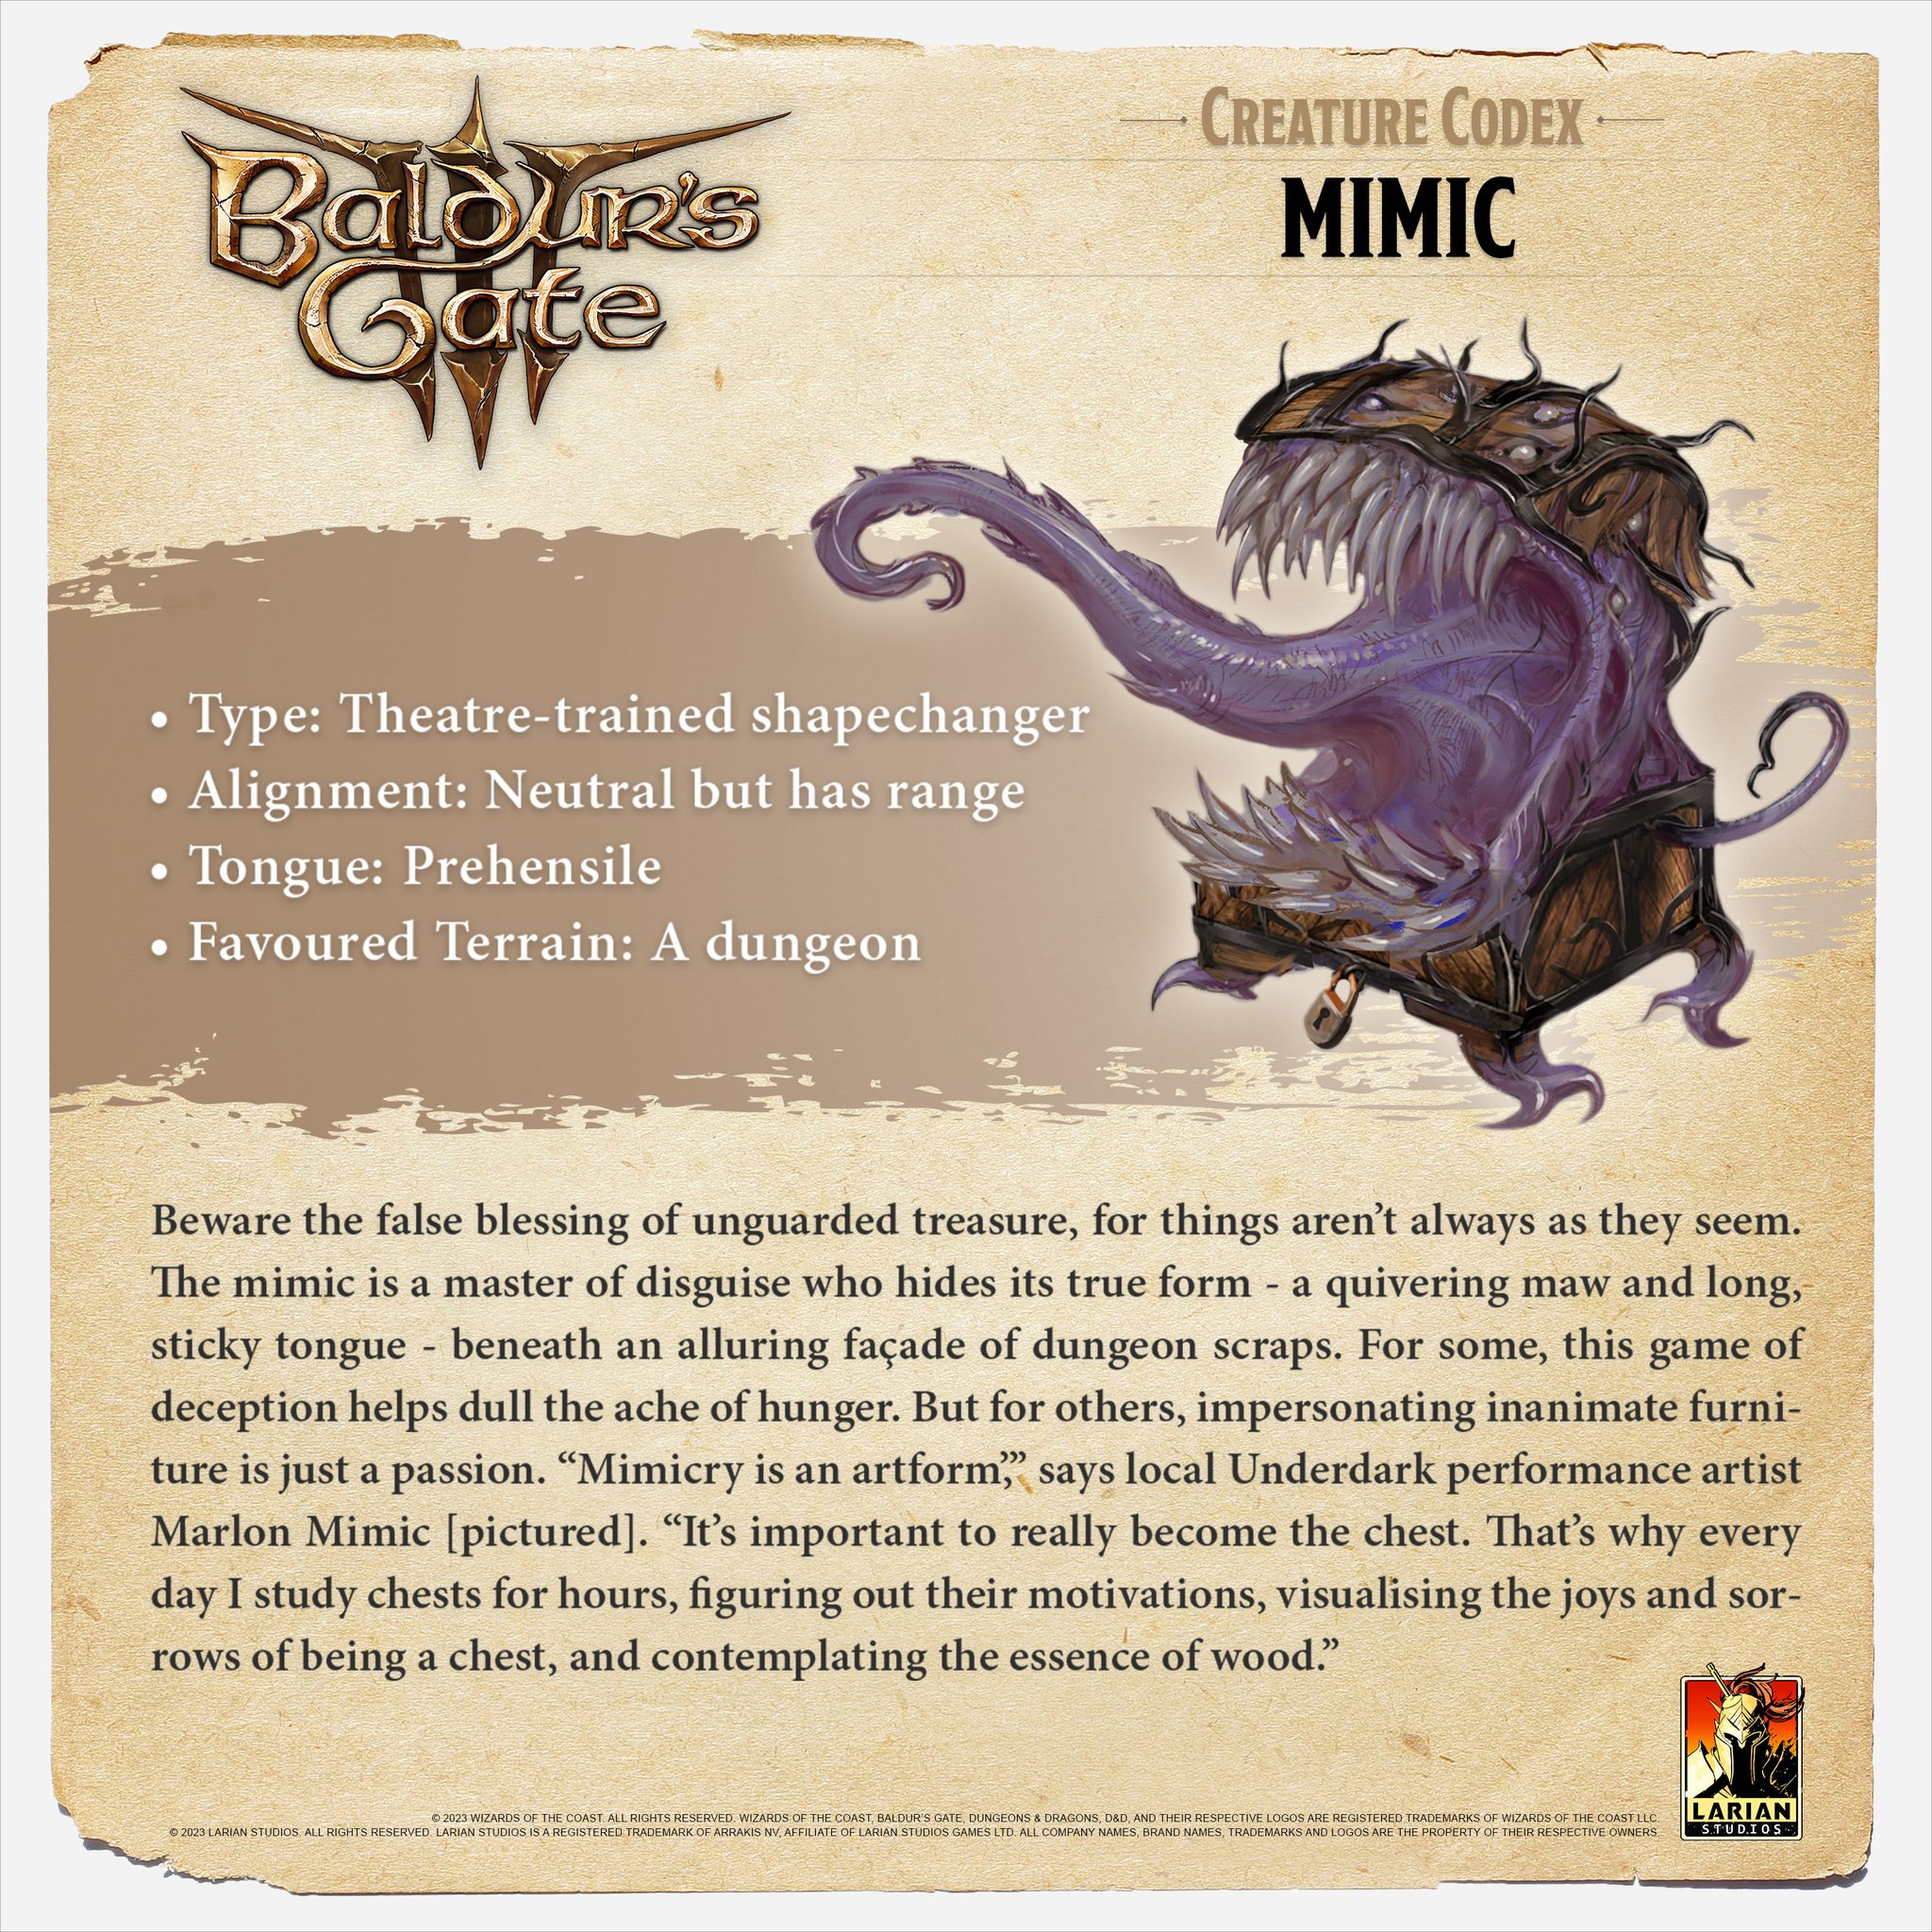 Mimic - Baldur's Gate 3 Wiki